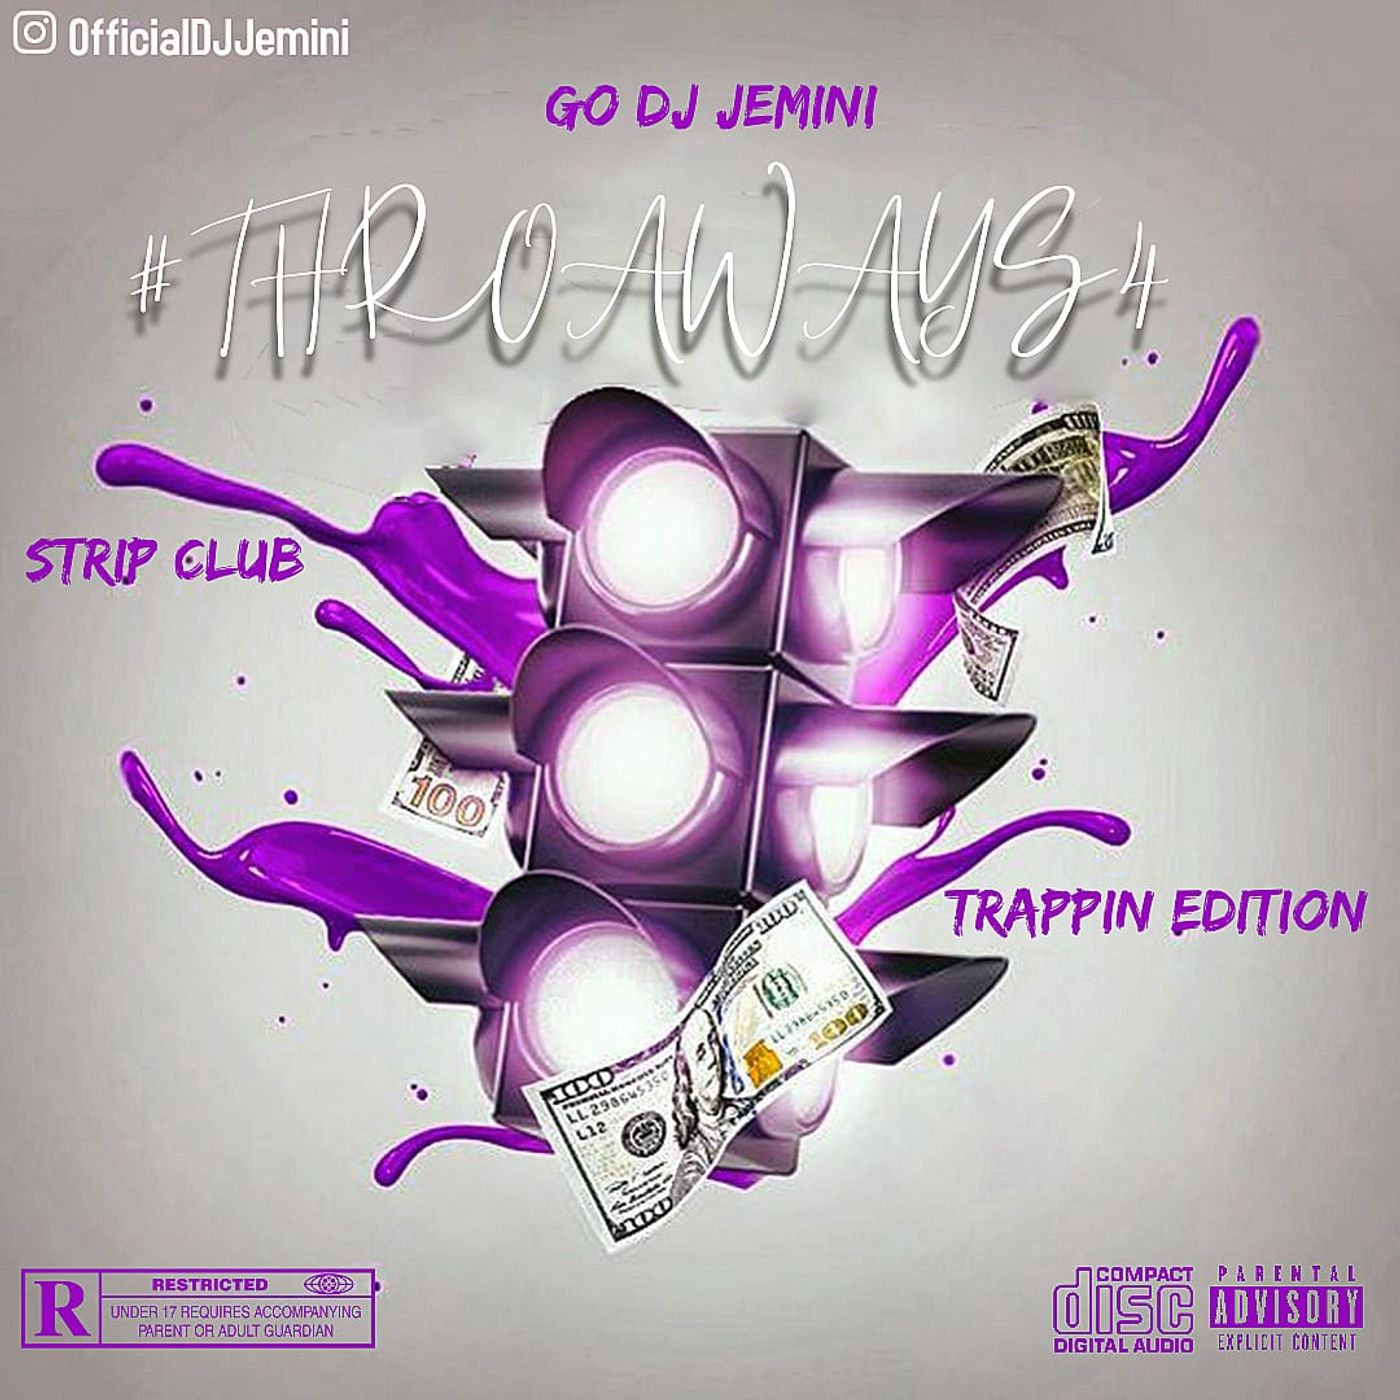 Go DJ Jemini Presents: #ThrowawaysVol4: Strip Club Trappin Edition